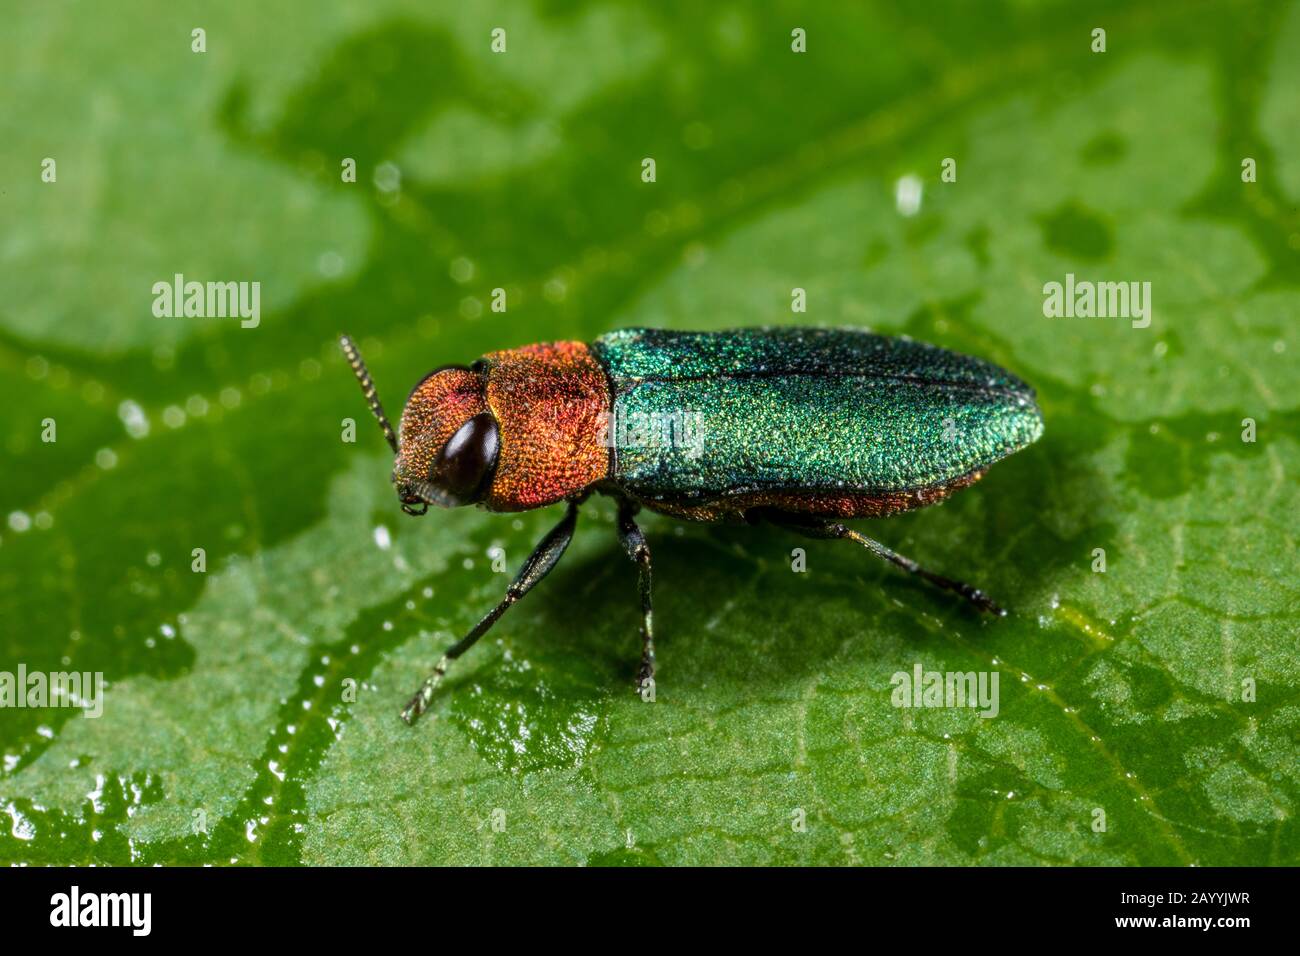 Jewel beetle, coléoptère bois métallique (Anthaxia nitidula), Femme, Allemagne Banque D'Images